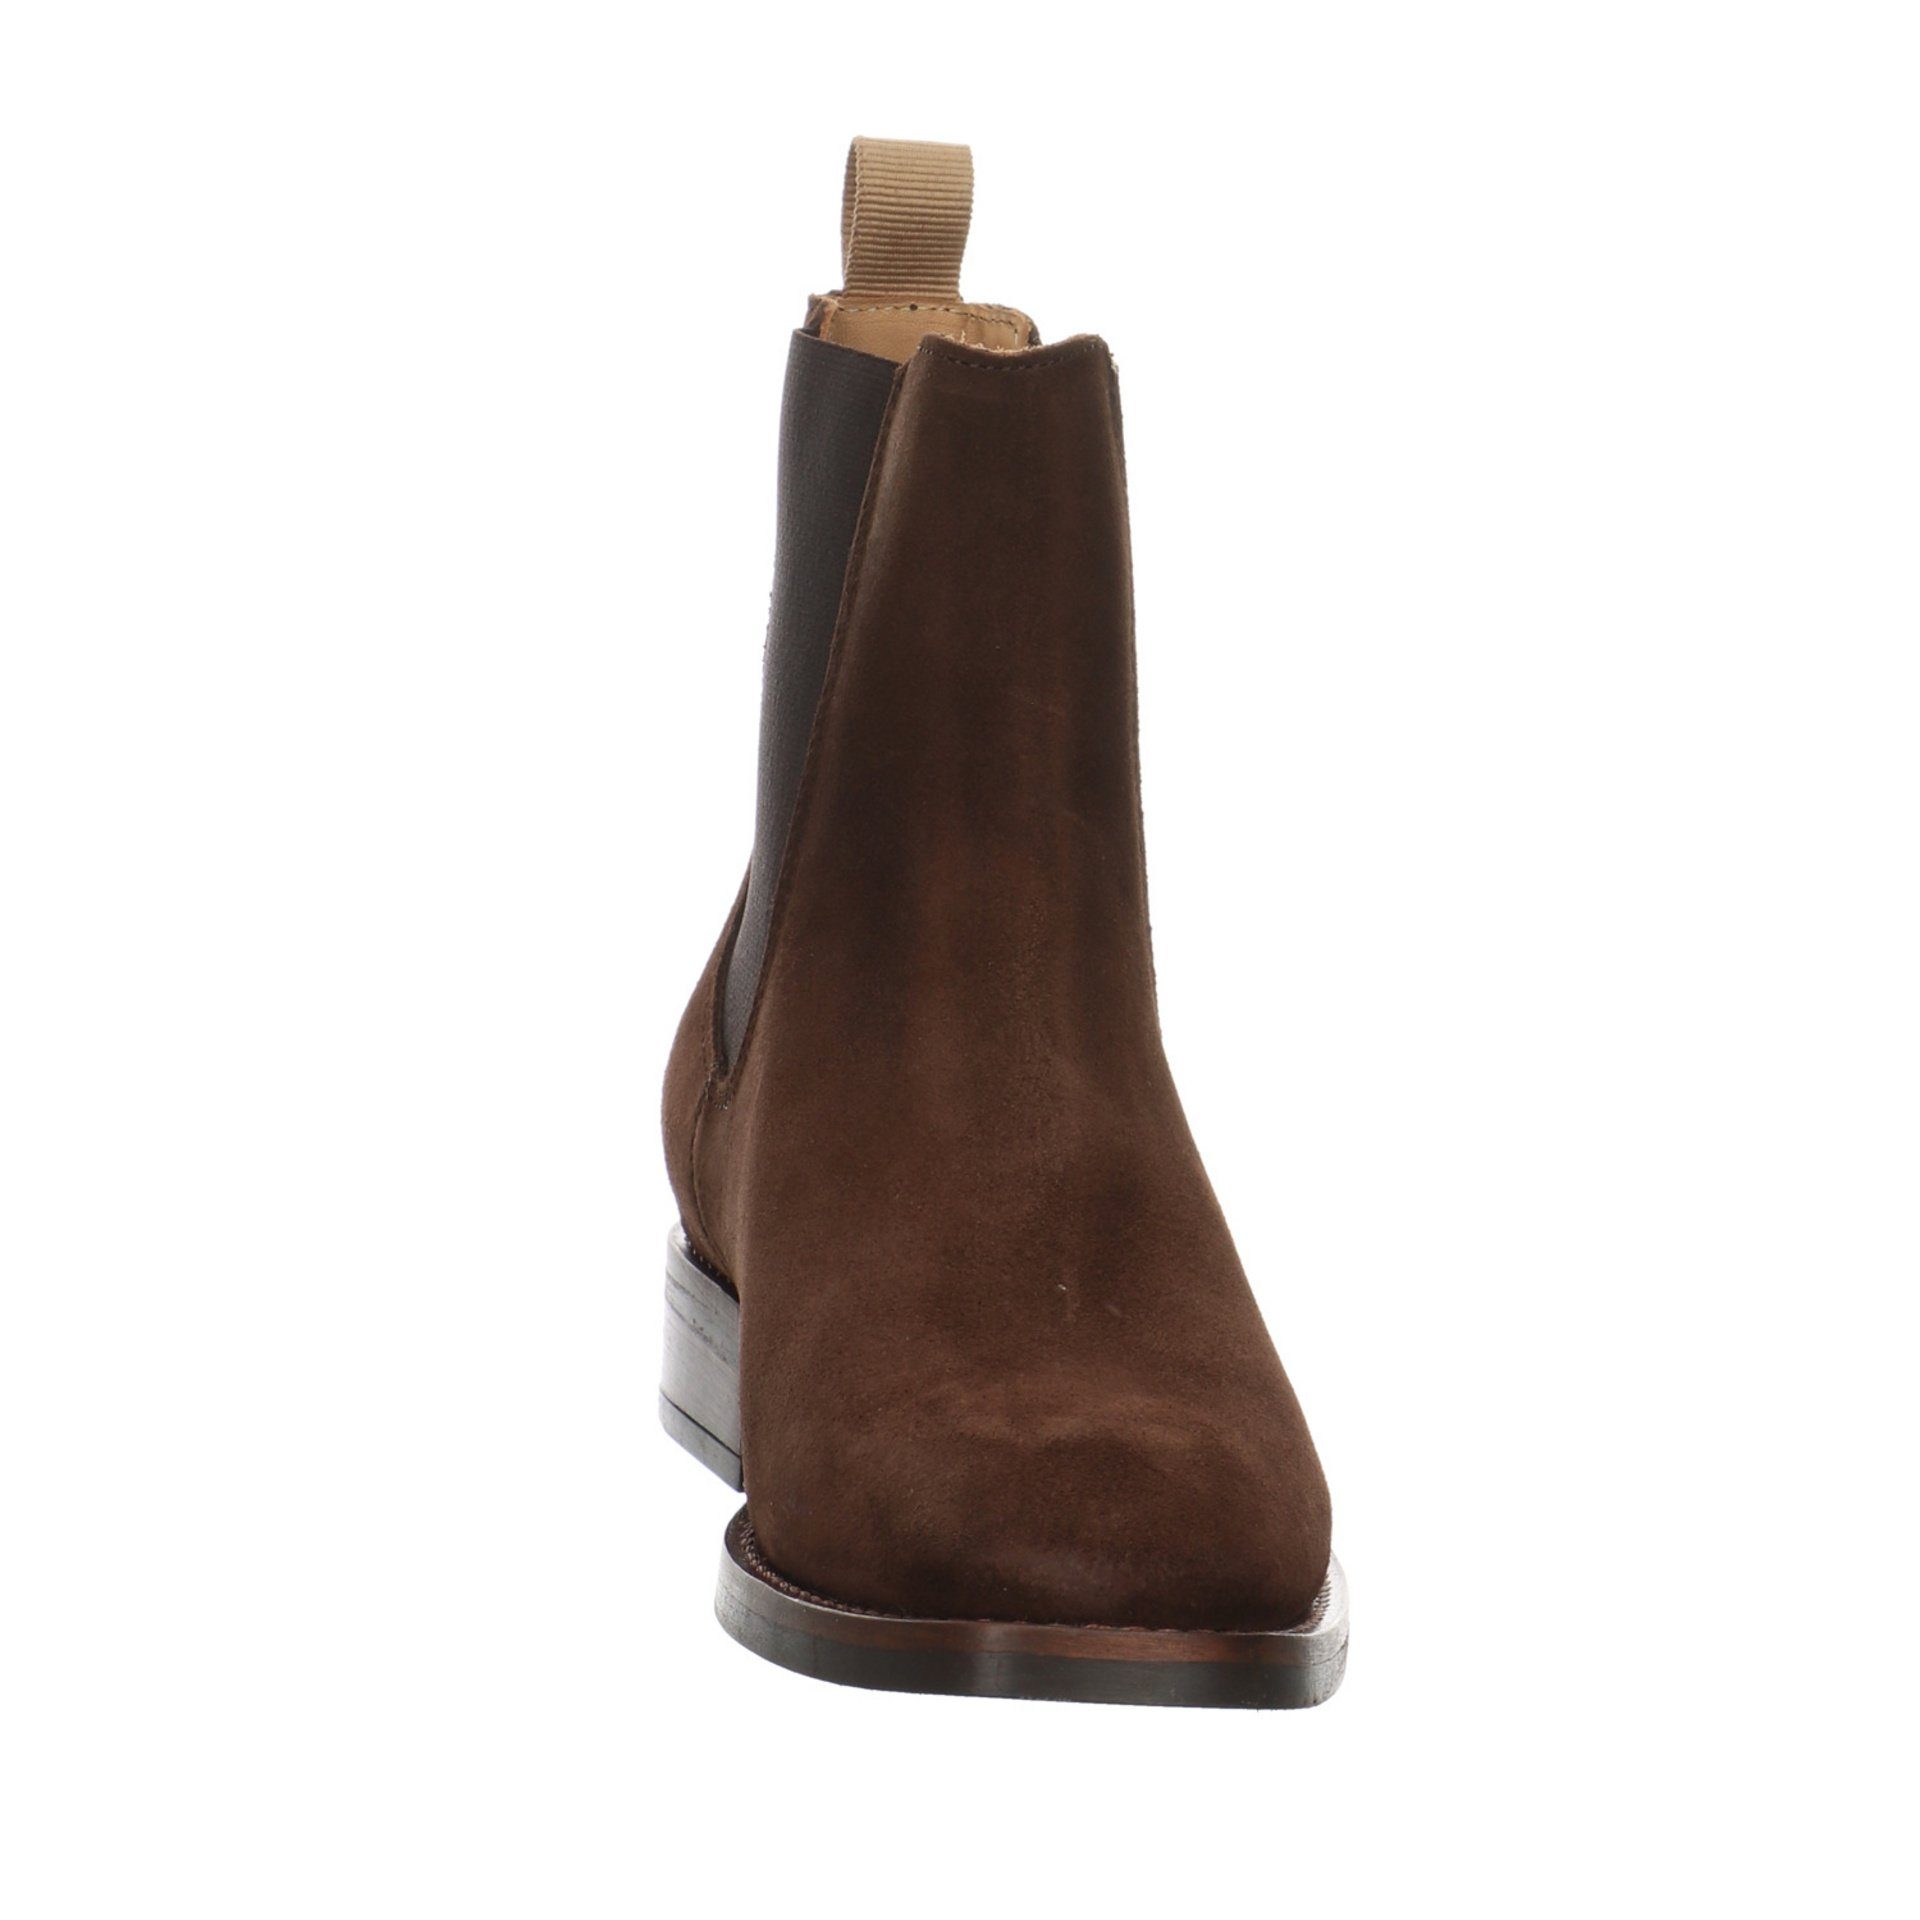 Gant Boots Schuhe Damen Stiefeletten Stiefelette brown Chelsea Leder-/Textilkombination FAYY dark